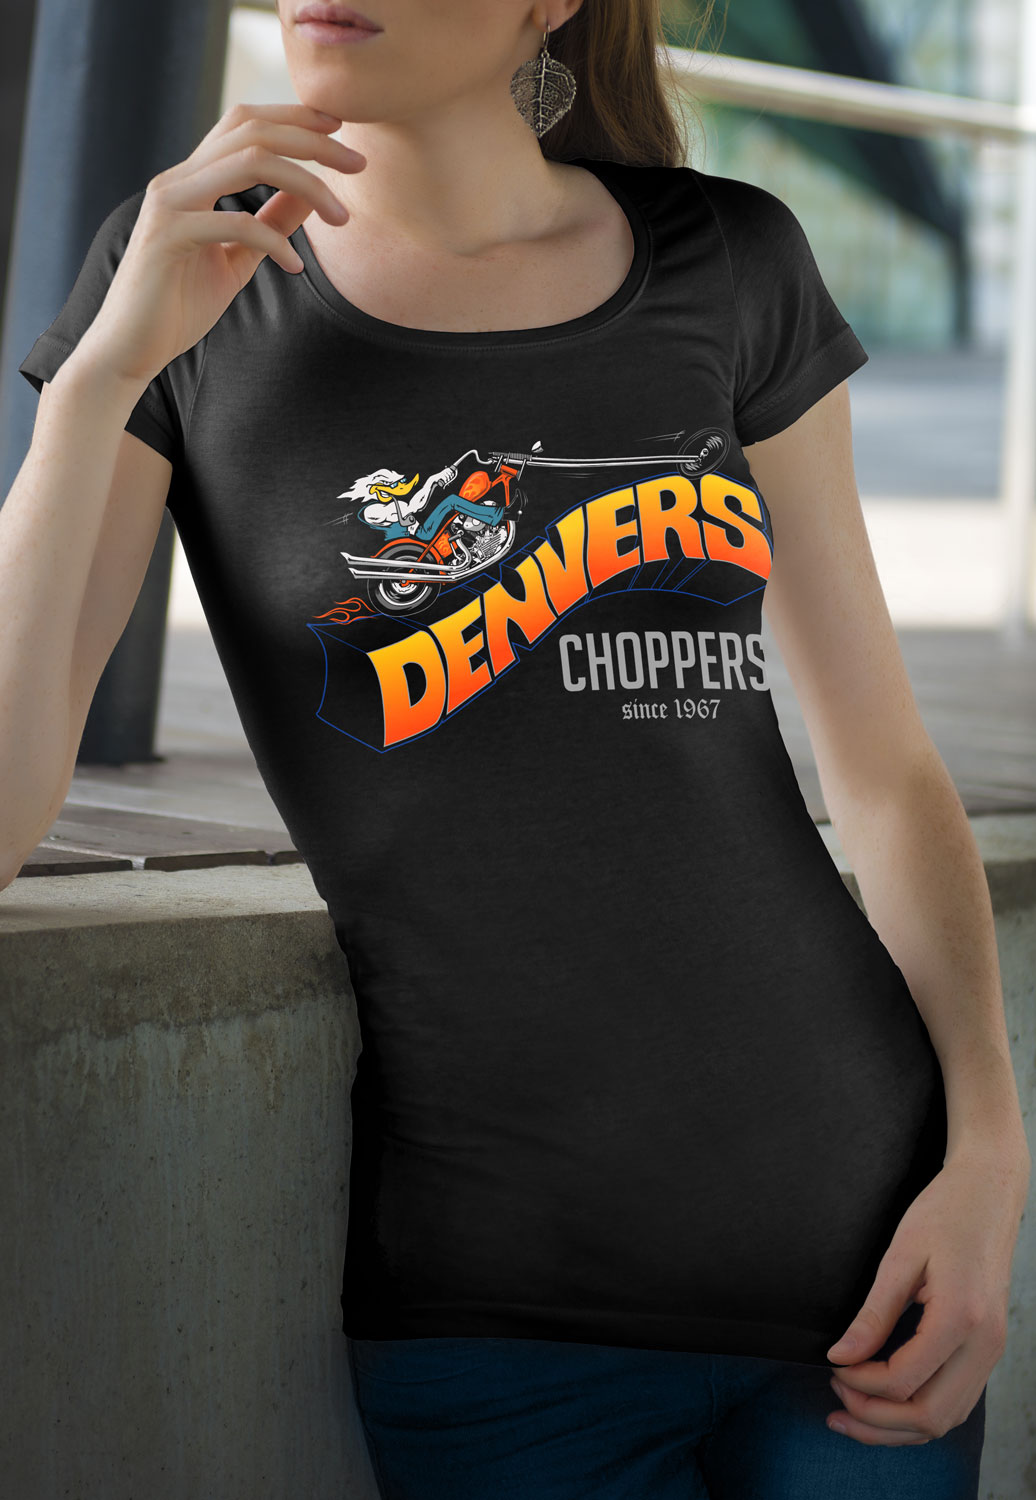 Denver’s Choppers womans T